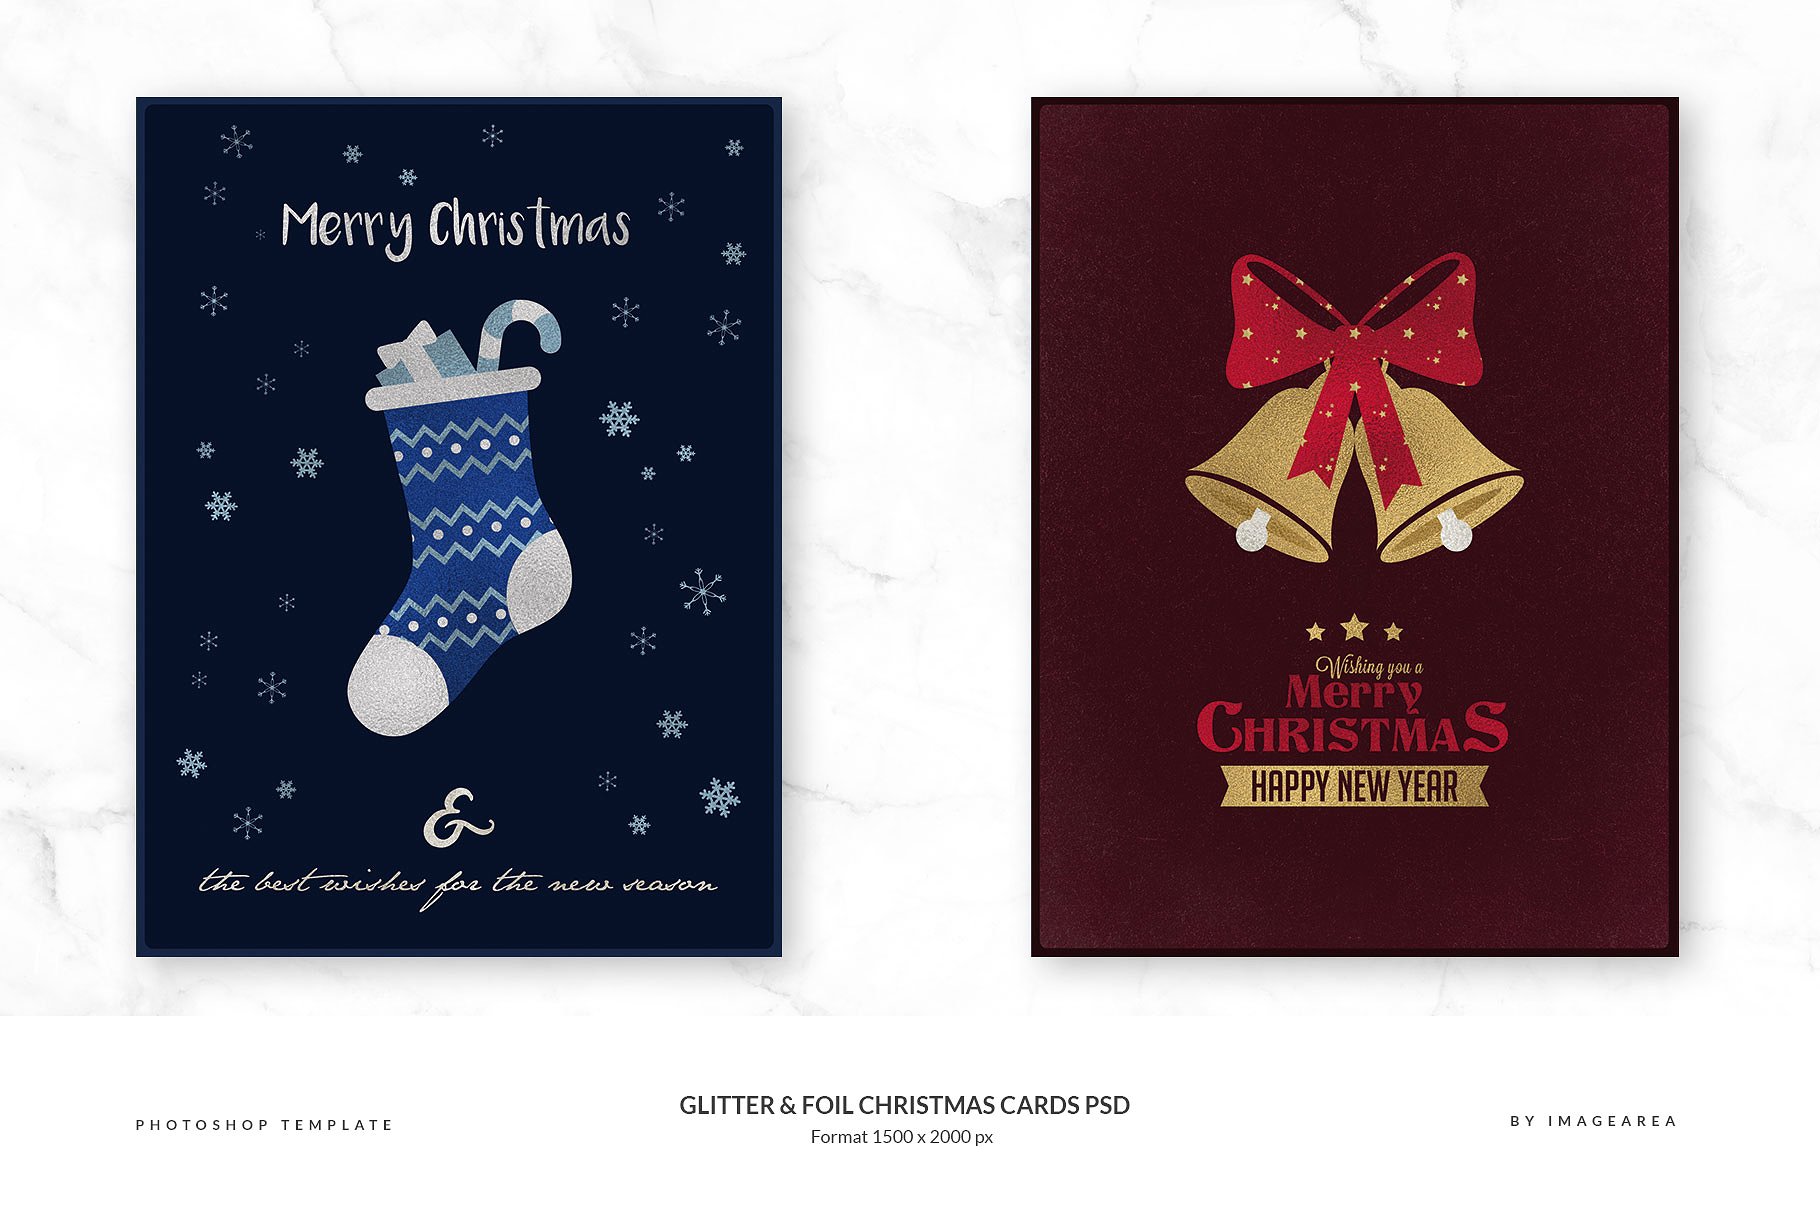 闪粉&金箔圣诞卡PSD模板合集 Glitter & Foil Christmas Cards PSD插图3